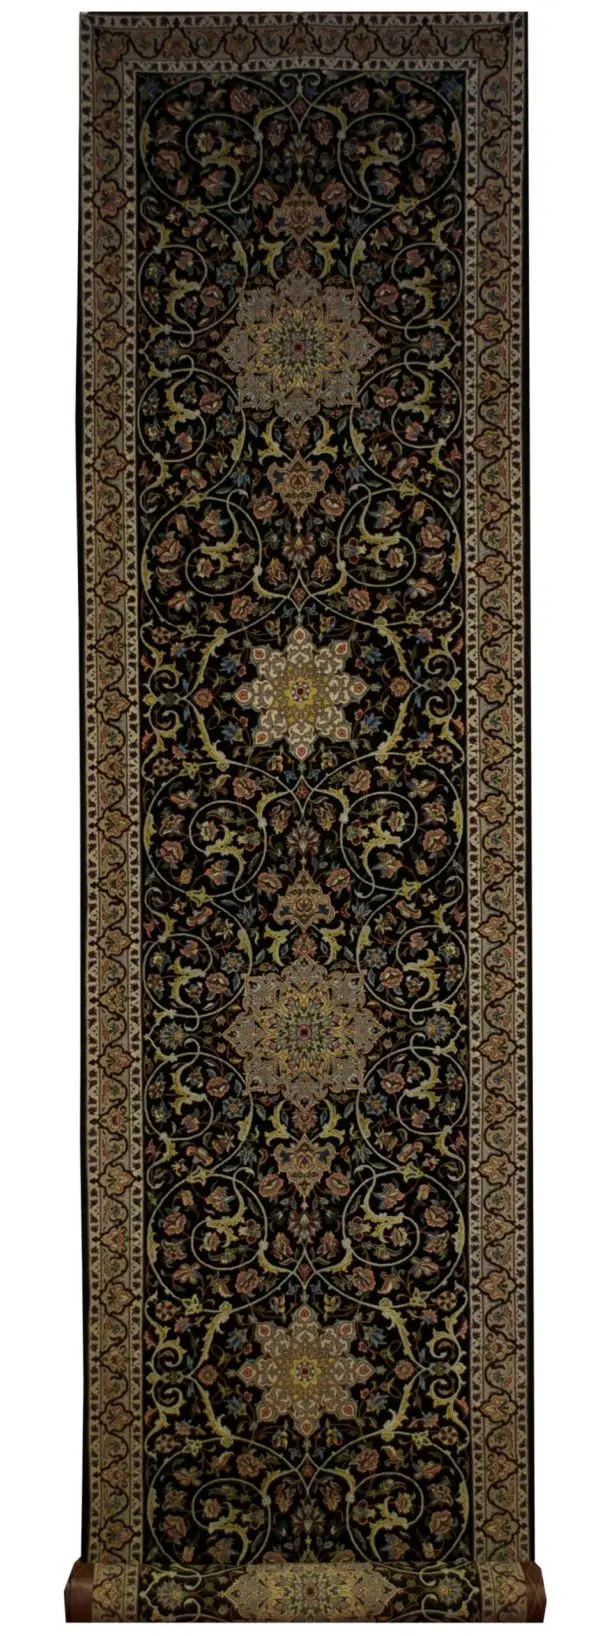 Persian Esfahan runner 2' 10" x 12' 6" - Shabahang Royal Carpet